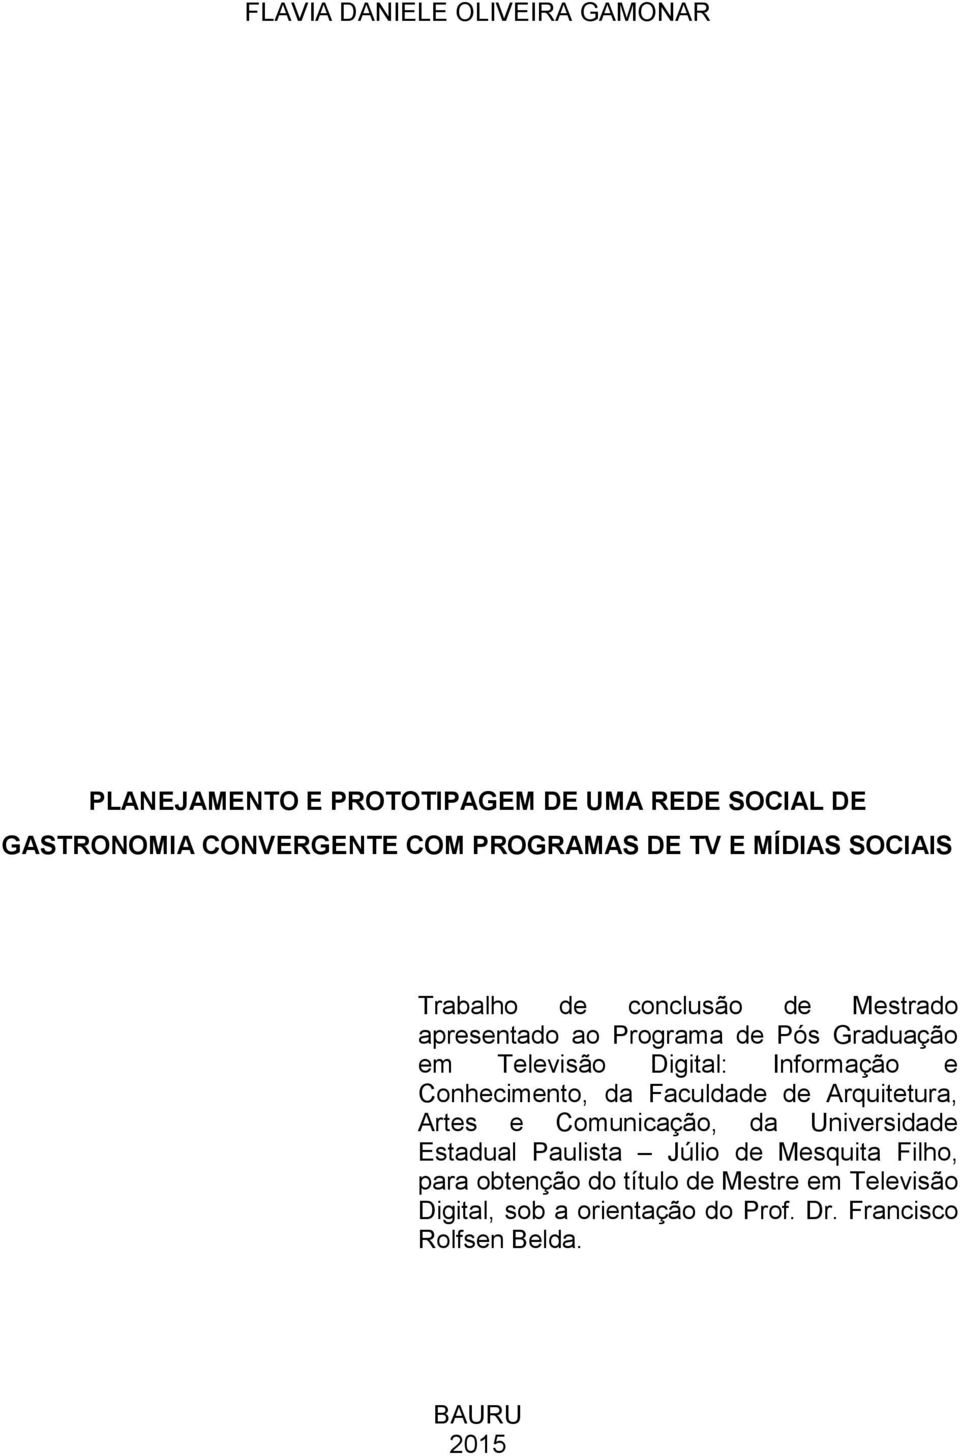 Informação e Conhecimento, da Faculdade de Arquitetura, Artes e Comunicação, da Universidade Estadual Paulista Júlio de